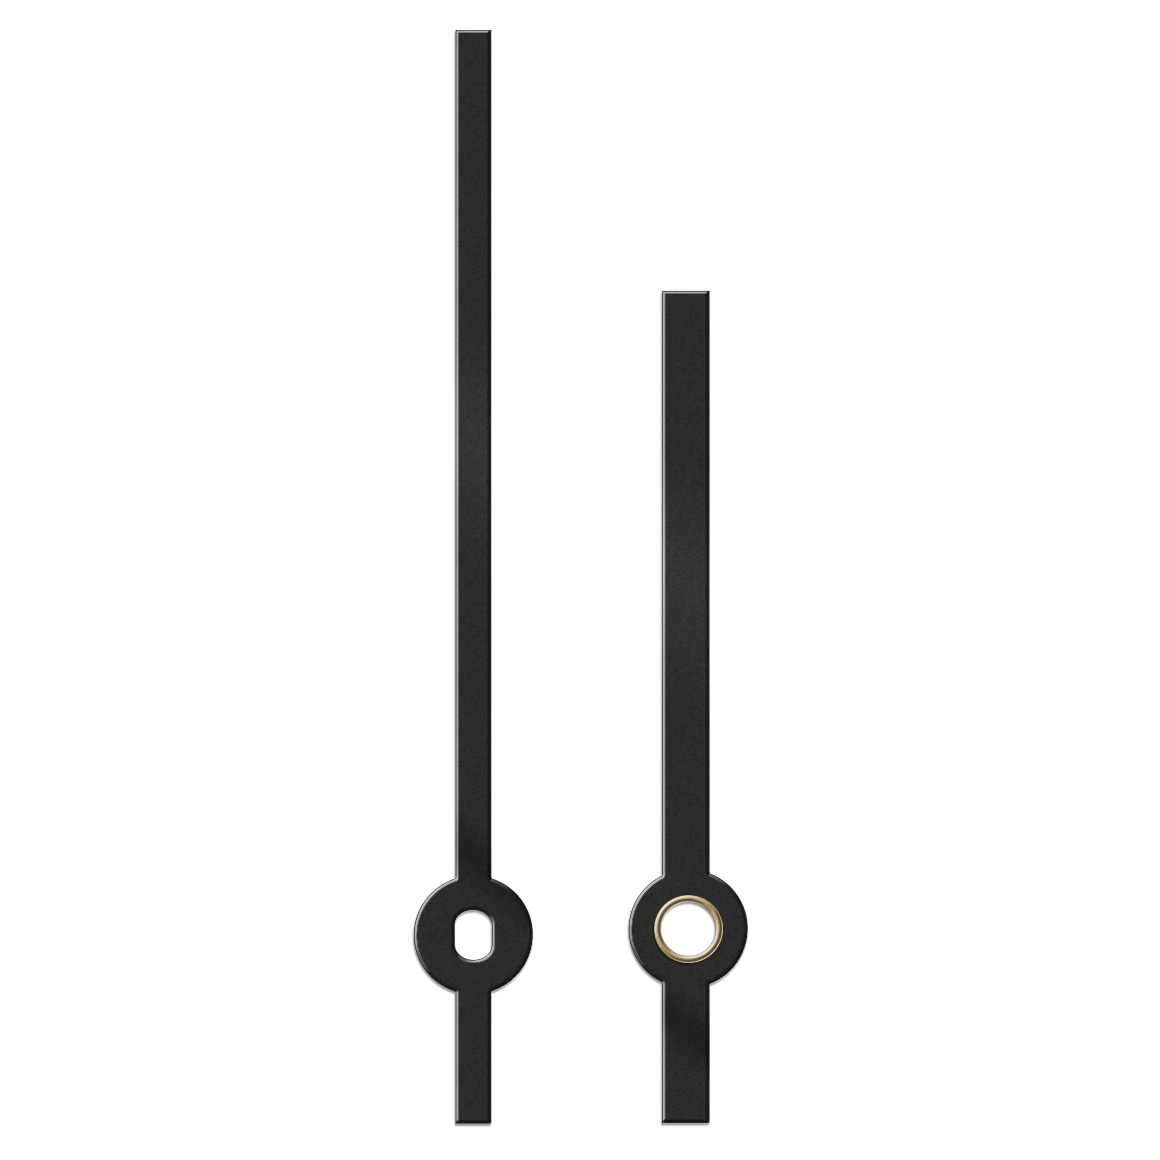 Paire d'aiguilles, baton, longueur 135 mm,
aluminium, noir, pour grandes horloges